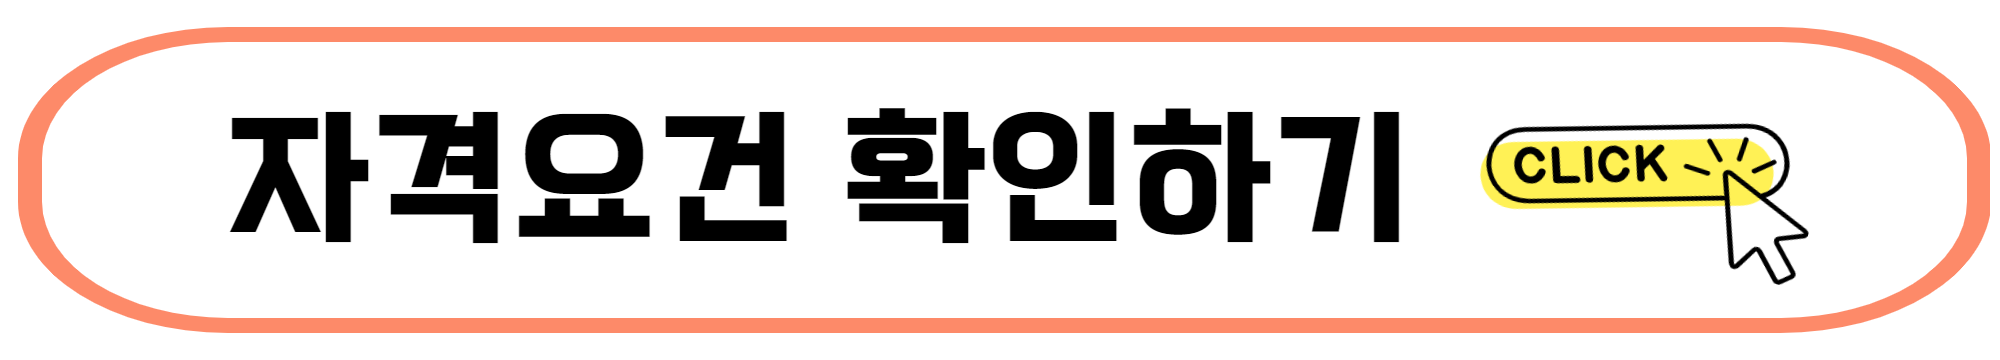 뉴홈 2차 사전청약 일정 자격 홈페이지(남양주 왕숙&#44; 안양 매곡)